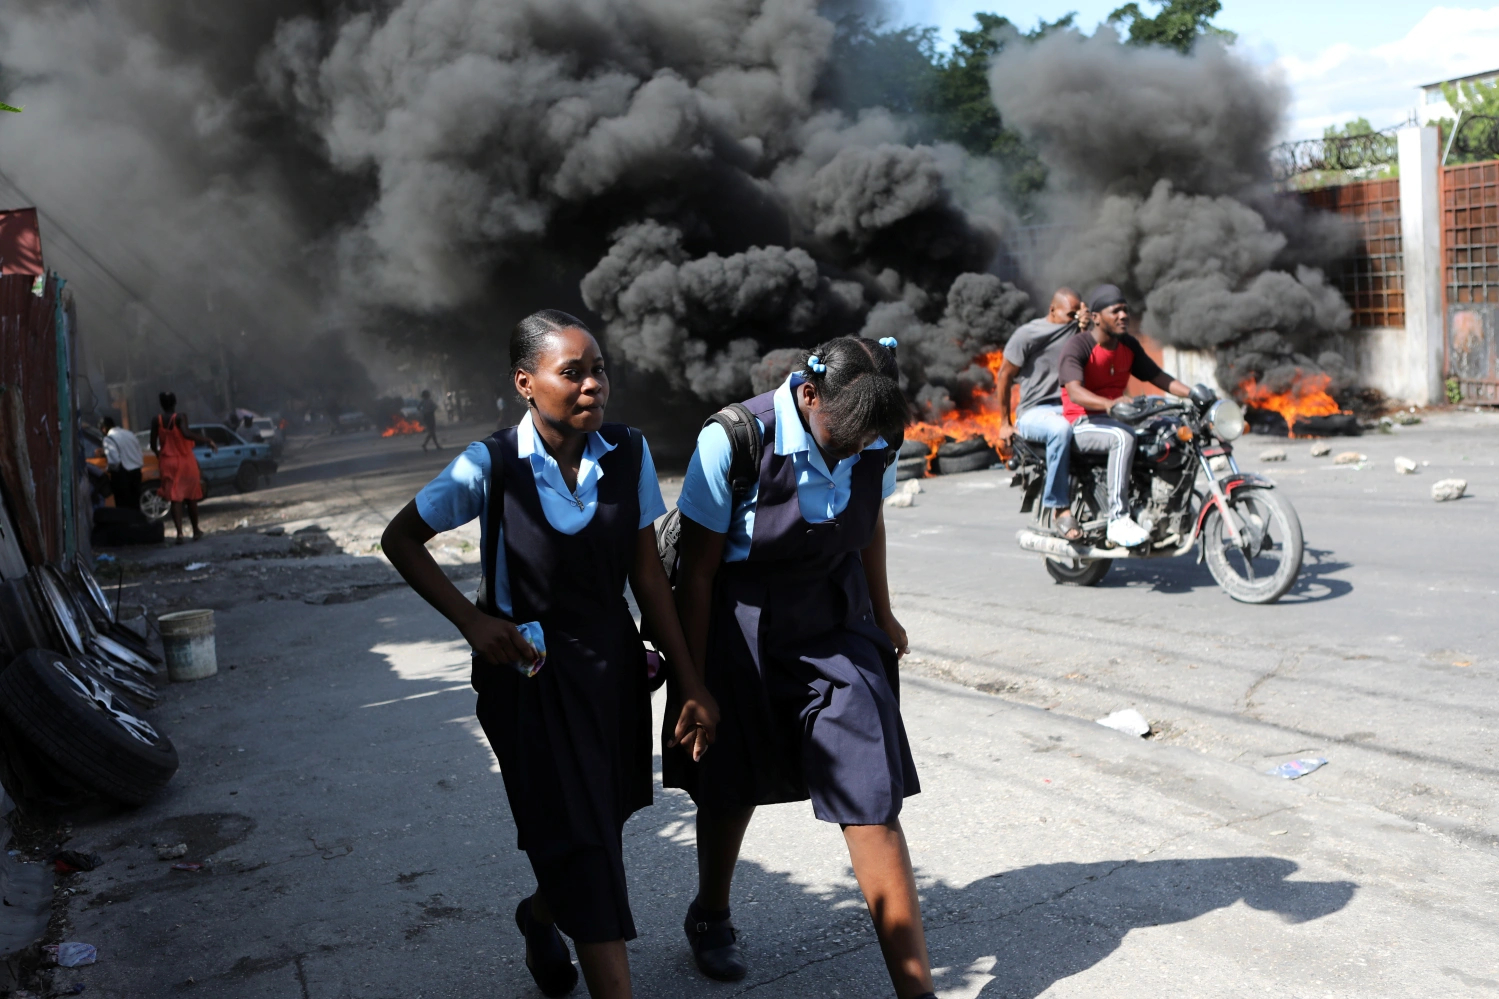 مجلس الأمن الدولي غير مستعدّ لإرسال قوة إلى هايتي